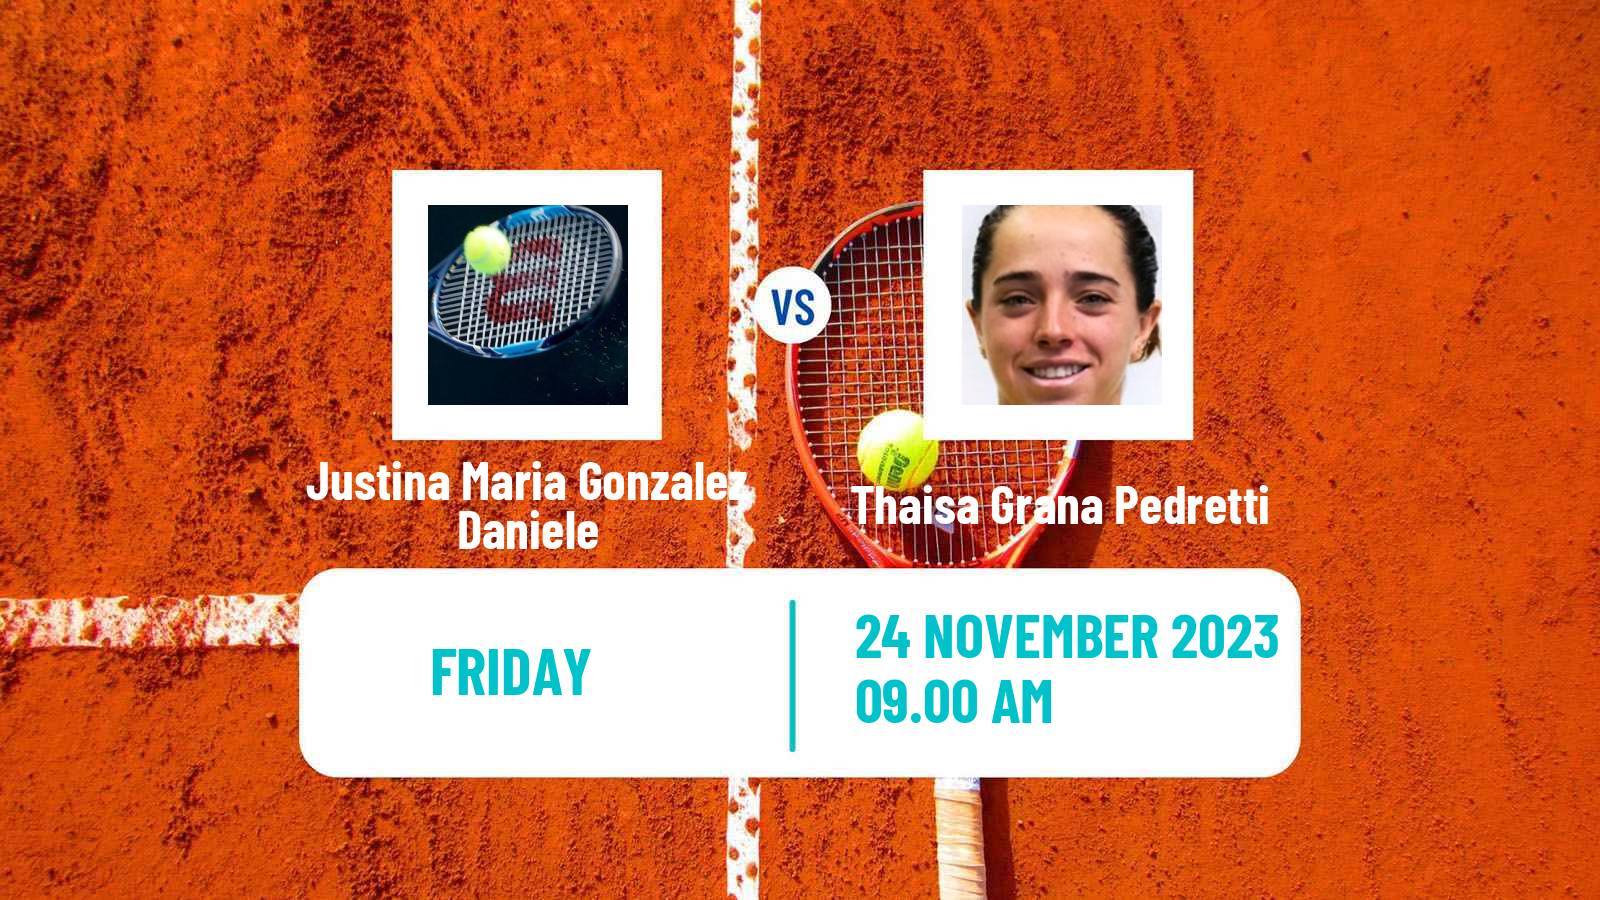 Tennis ITF W15 Cordoba Women Justina Maria Gonzalez Daniele - Thaisa Grana Pedretti